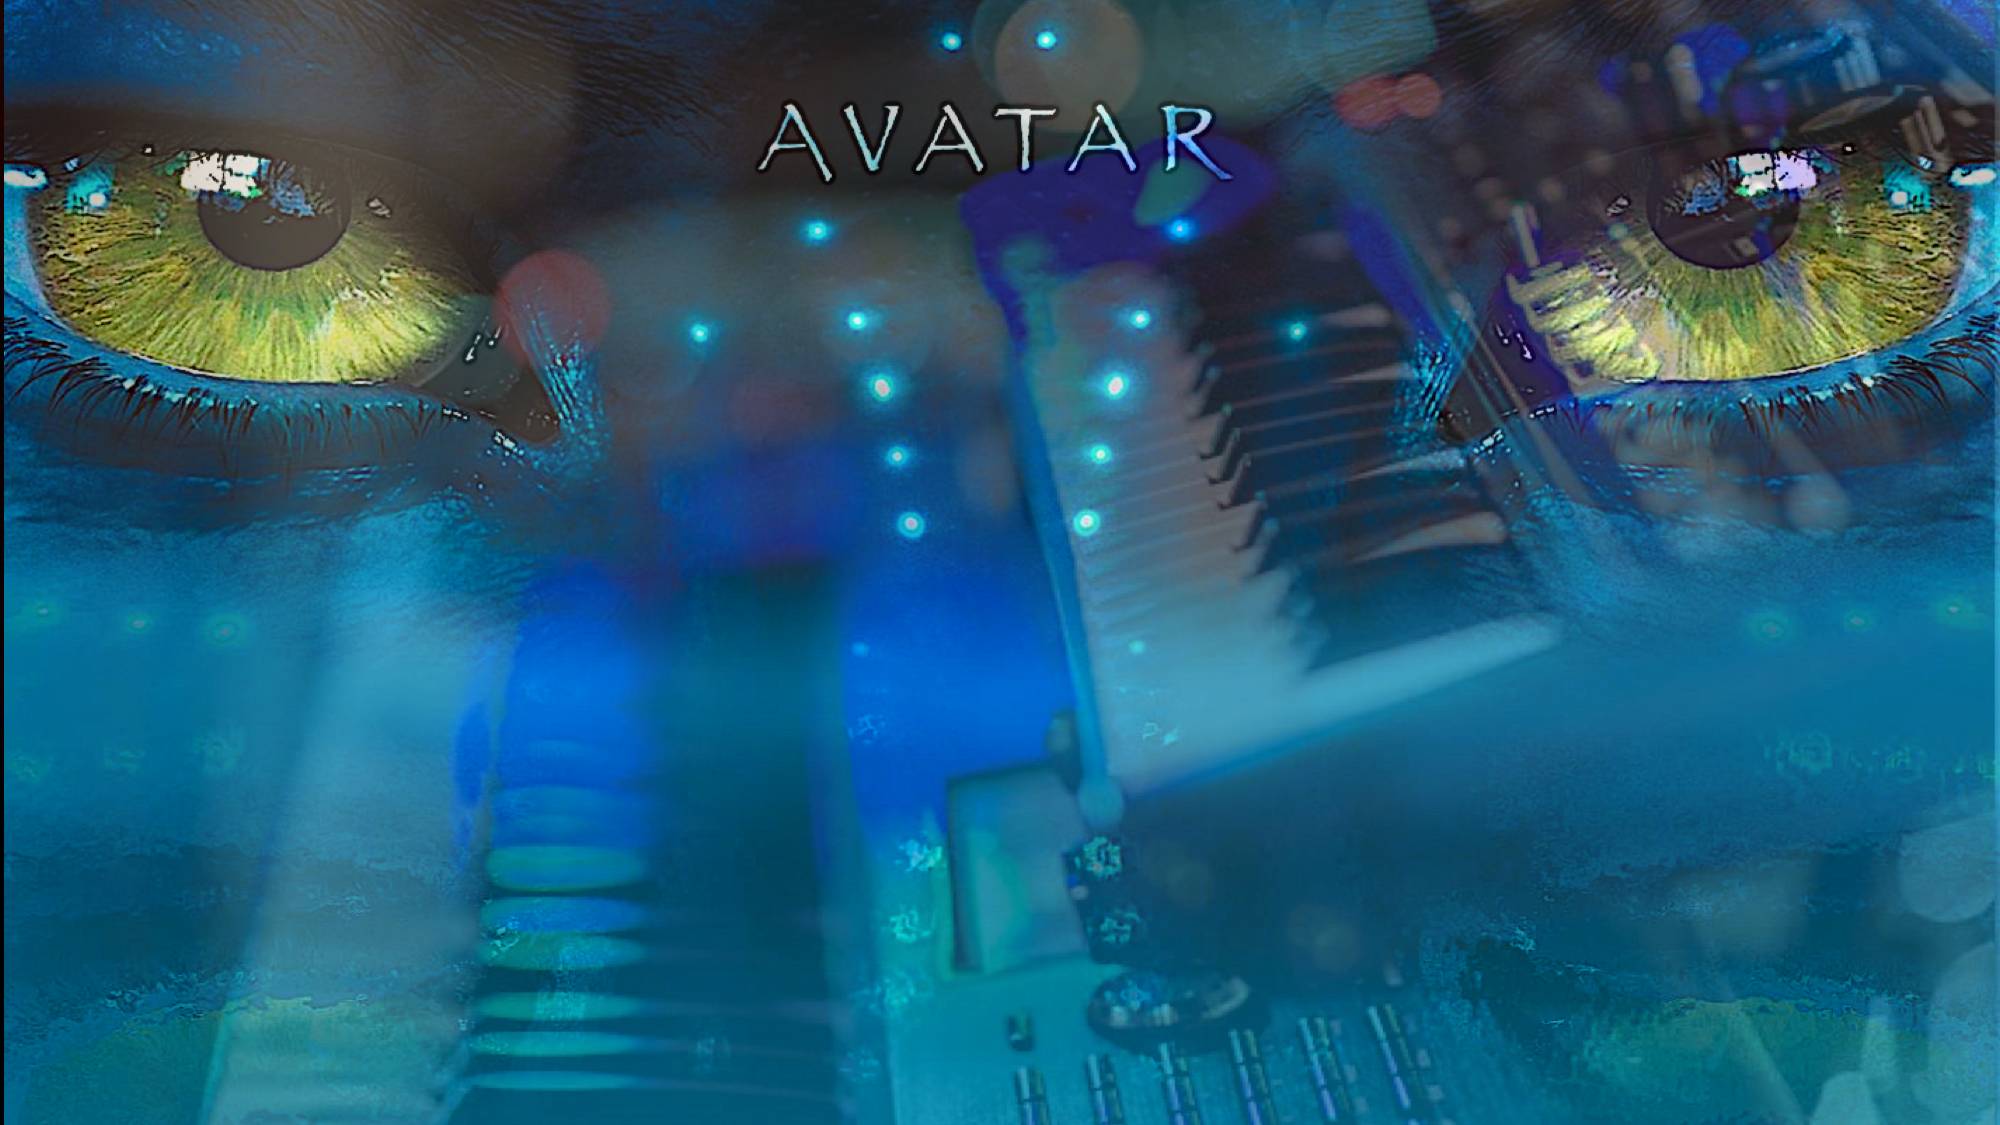 Stanislav Akulov (StifPlay) - "Avatar" (Keyboards Jam)